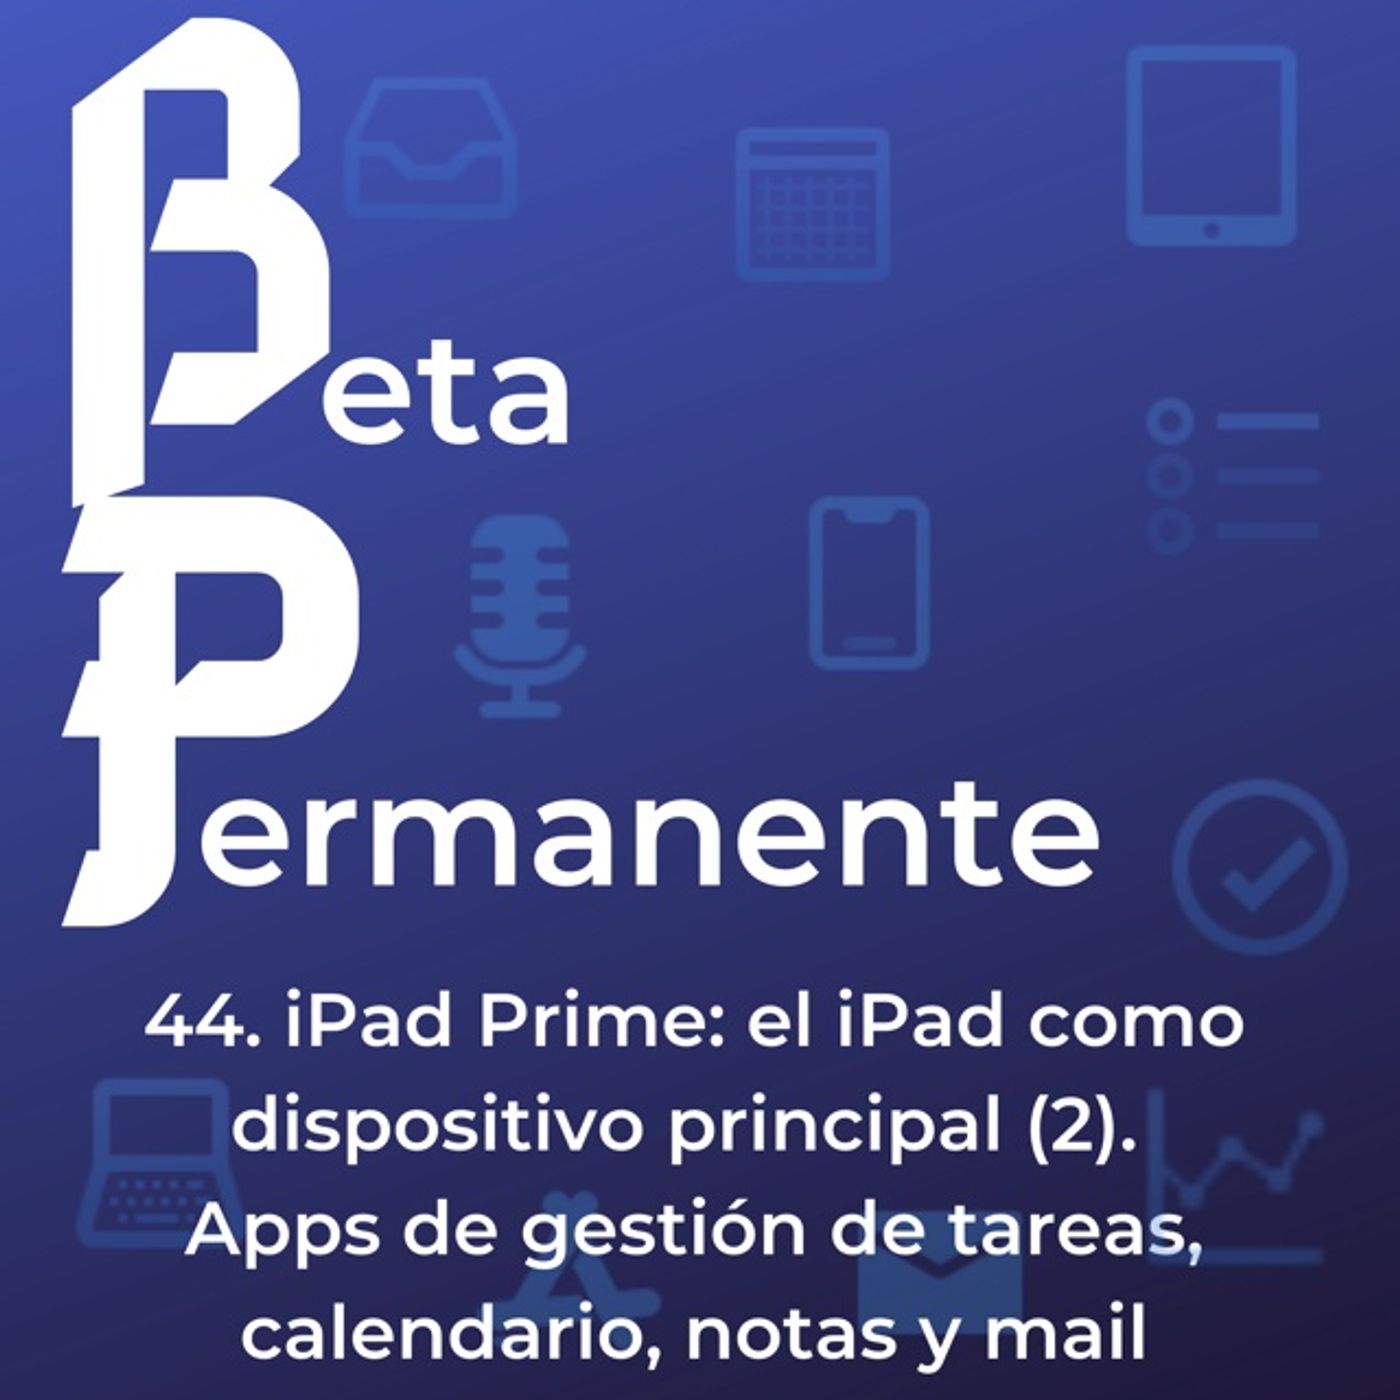 BP44 - iPad Prime: el iPad como dispositivo principal (3). Apps de gestión de tareas, calendario, notas y mail